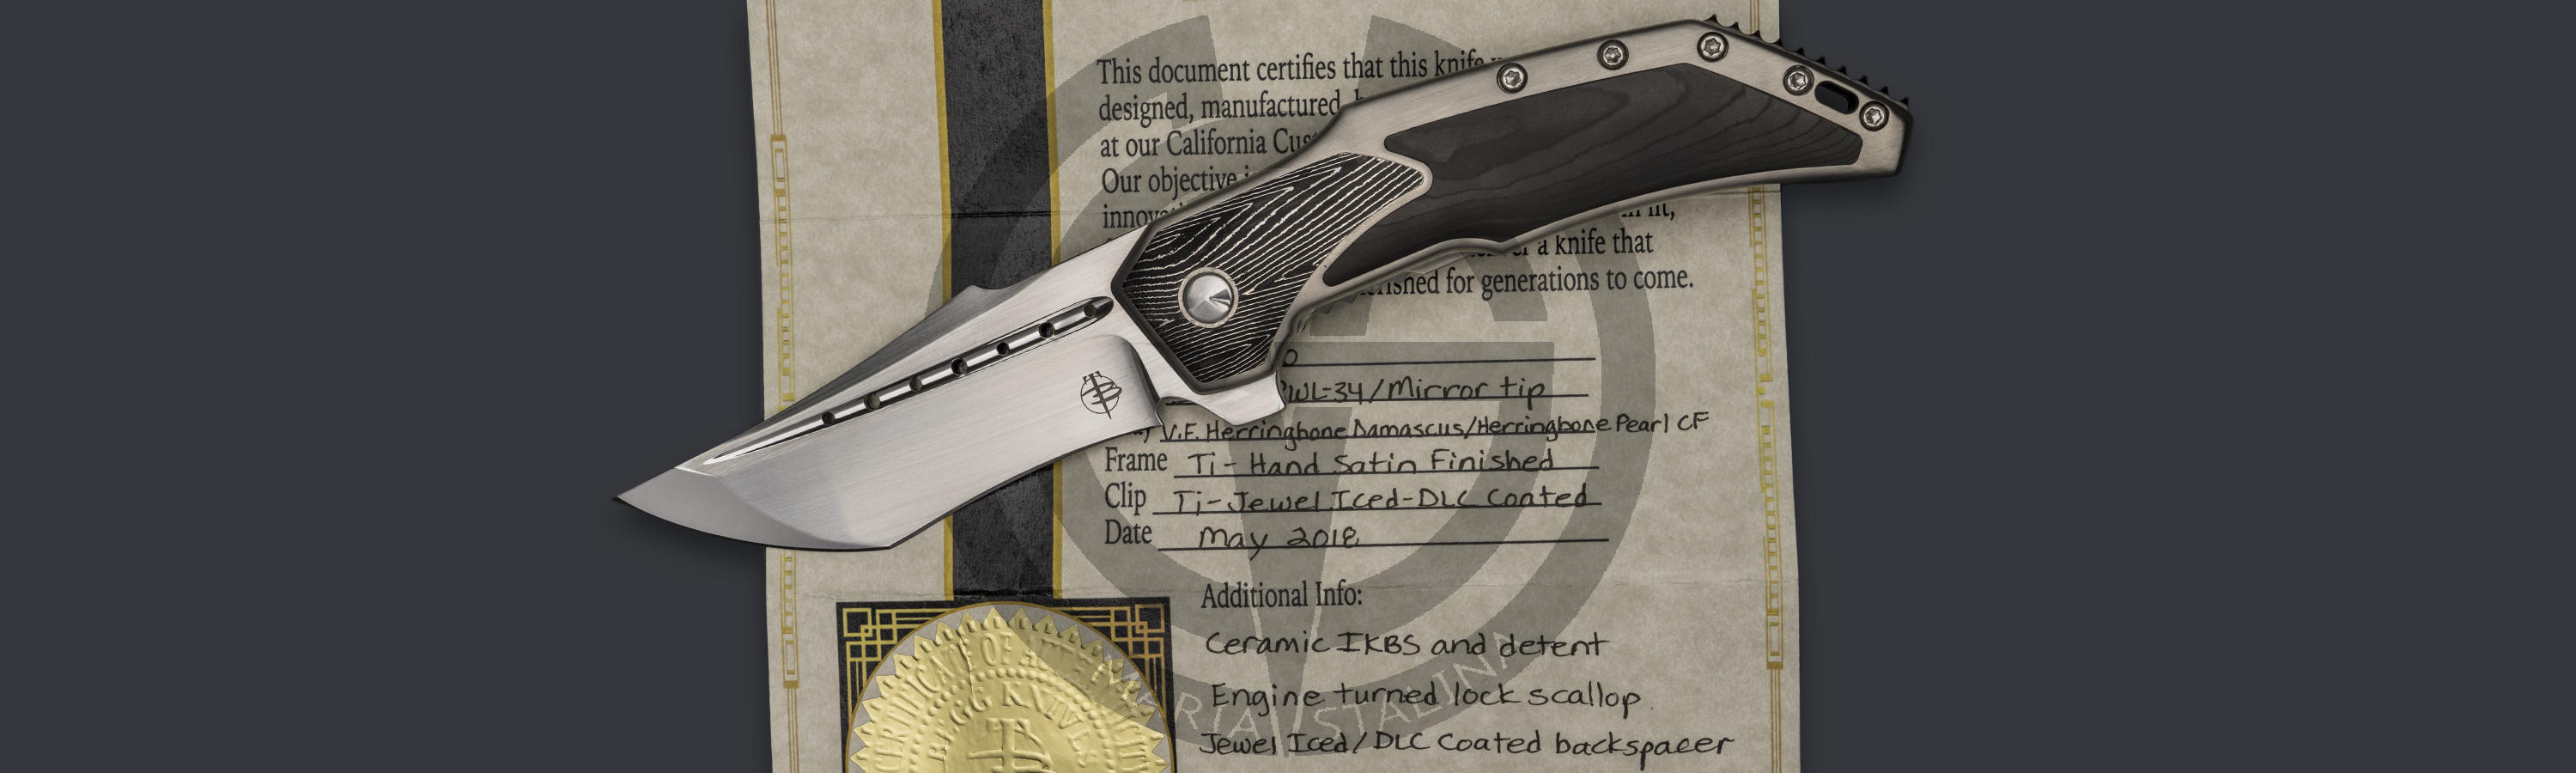 Сертификат подлинности от Begg Knives